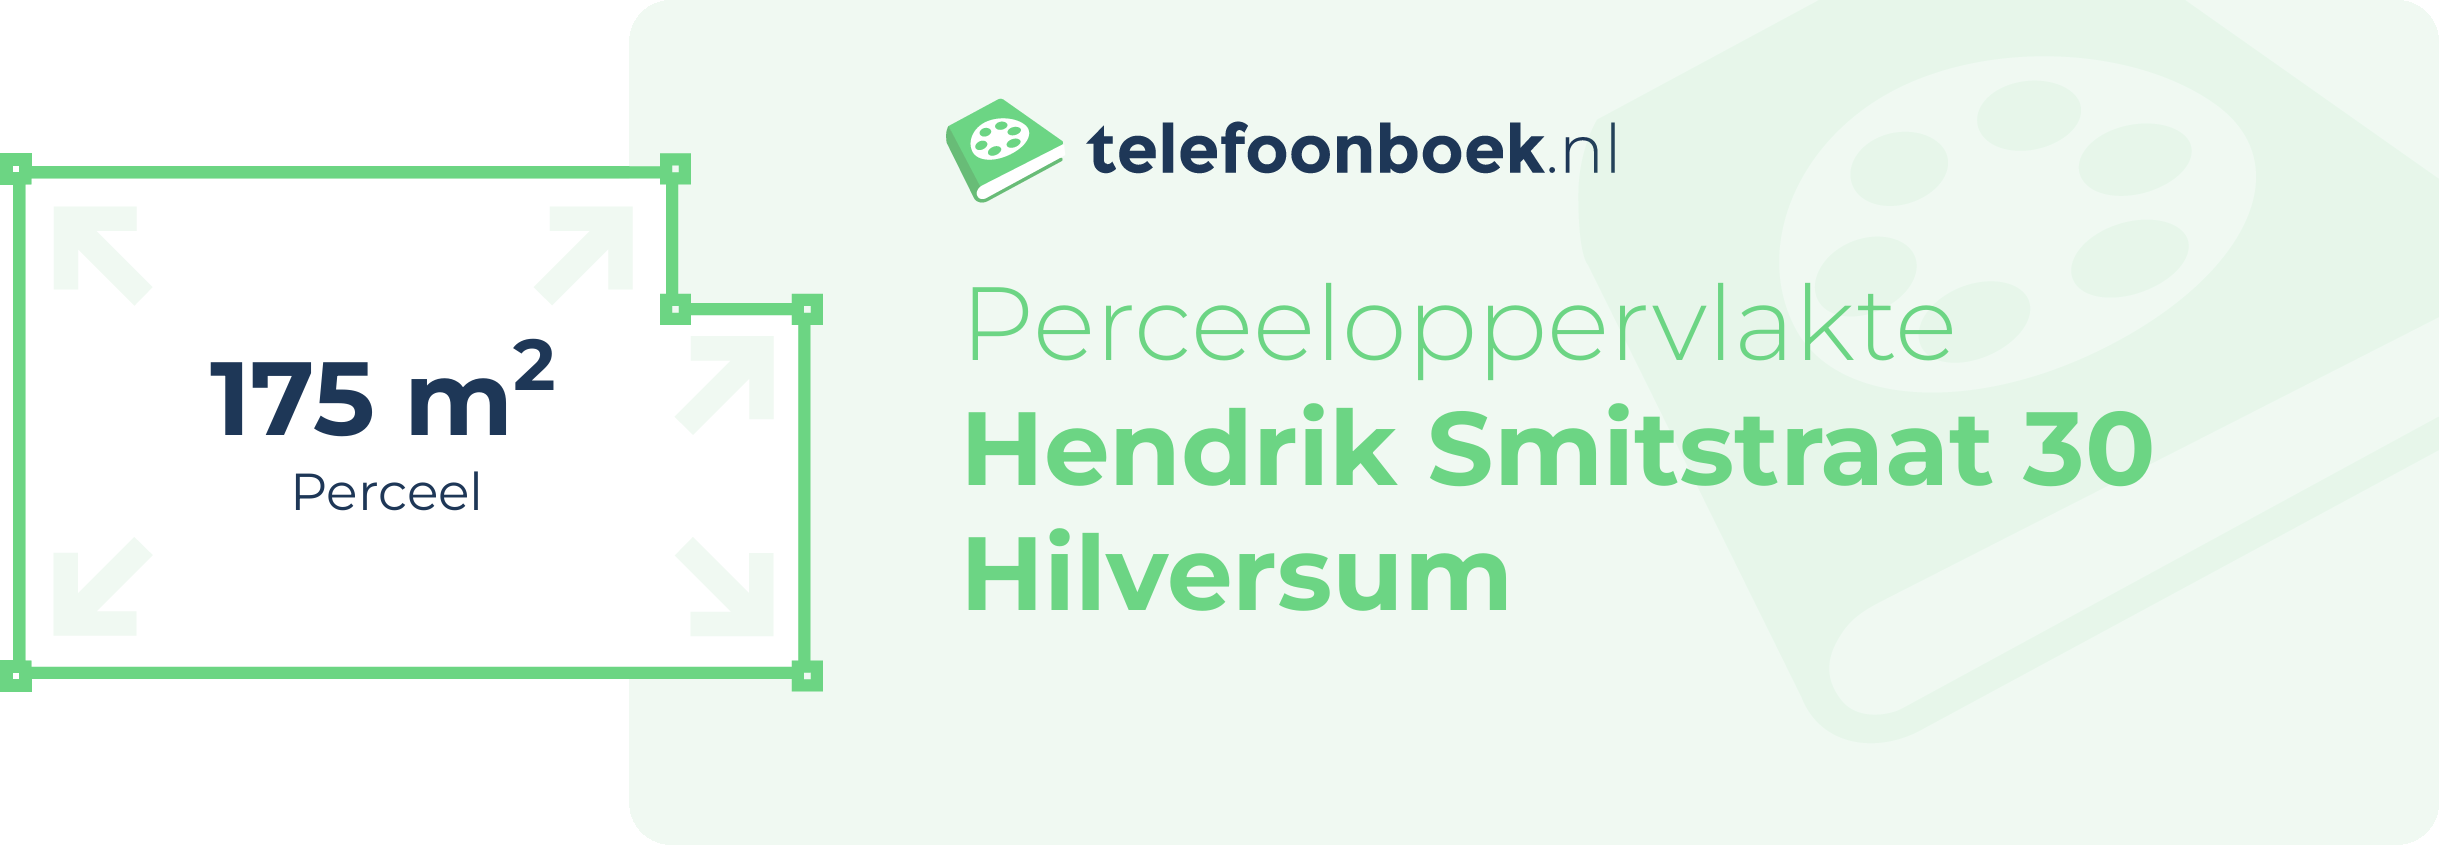 Perceeloppervlakte Hendrik Smitstraat 30 Hilversum